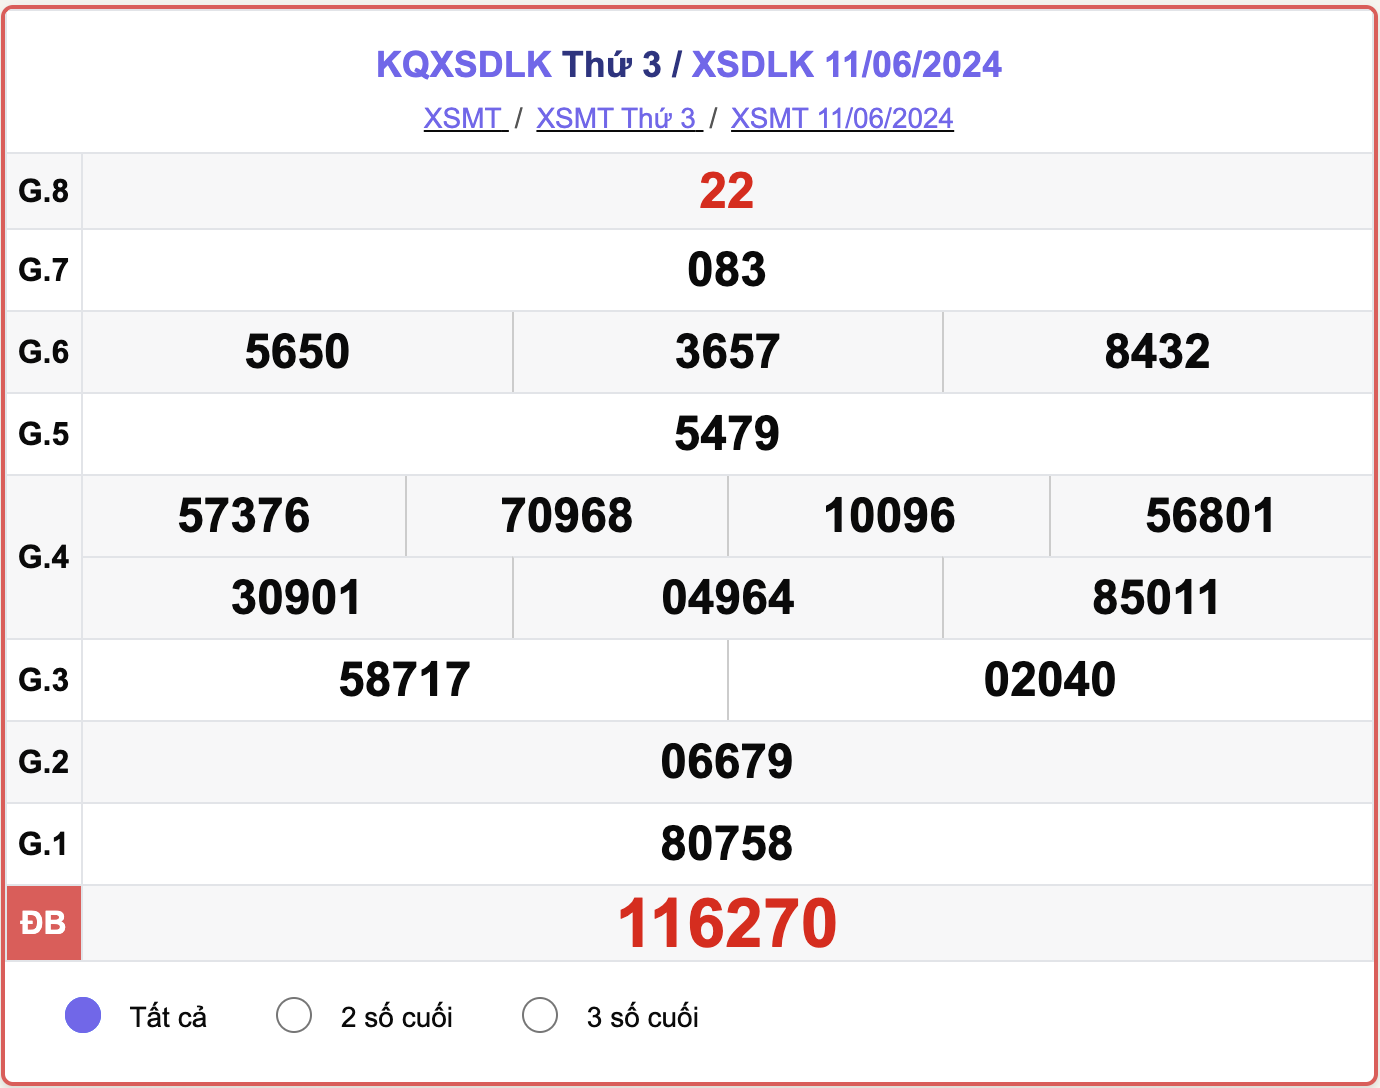 XSDLK 11/6, kết quả xổ số Đắk Lắk hôm nay 11/6/2024.